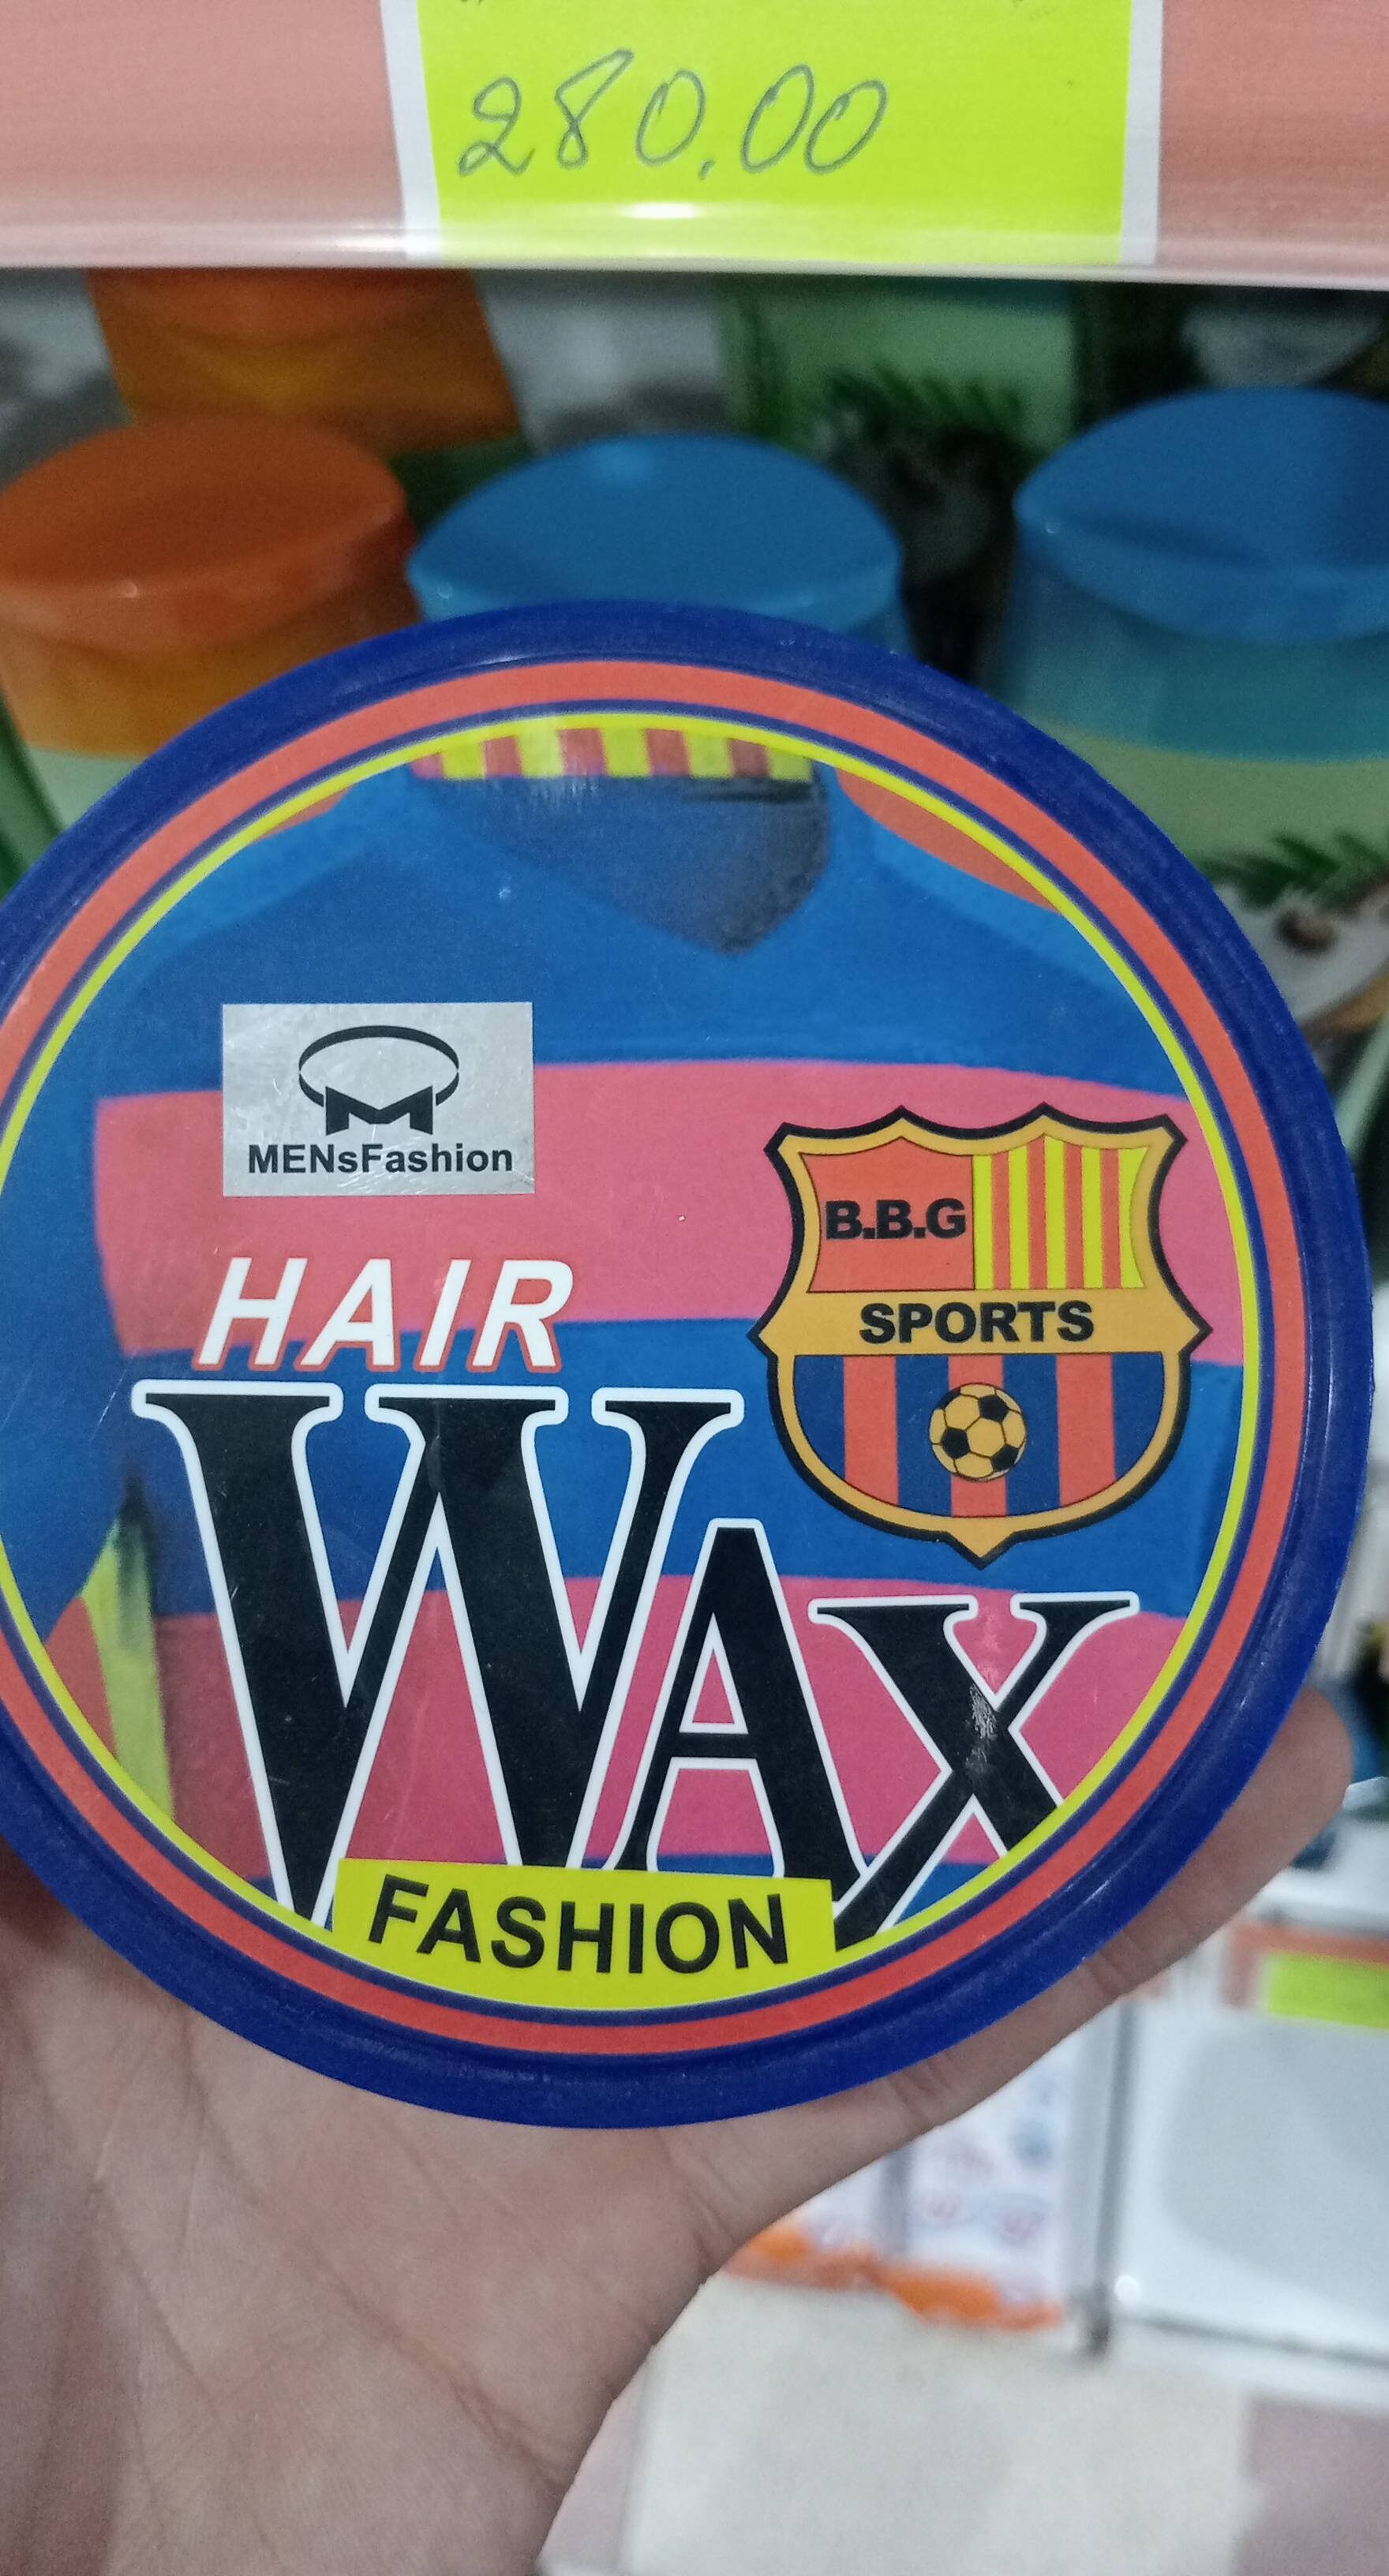 Hair wax - Product - fr